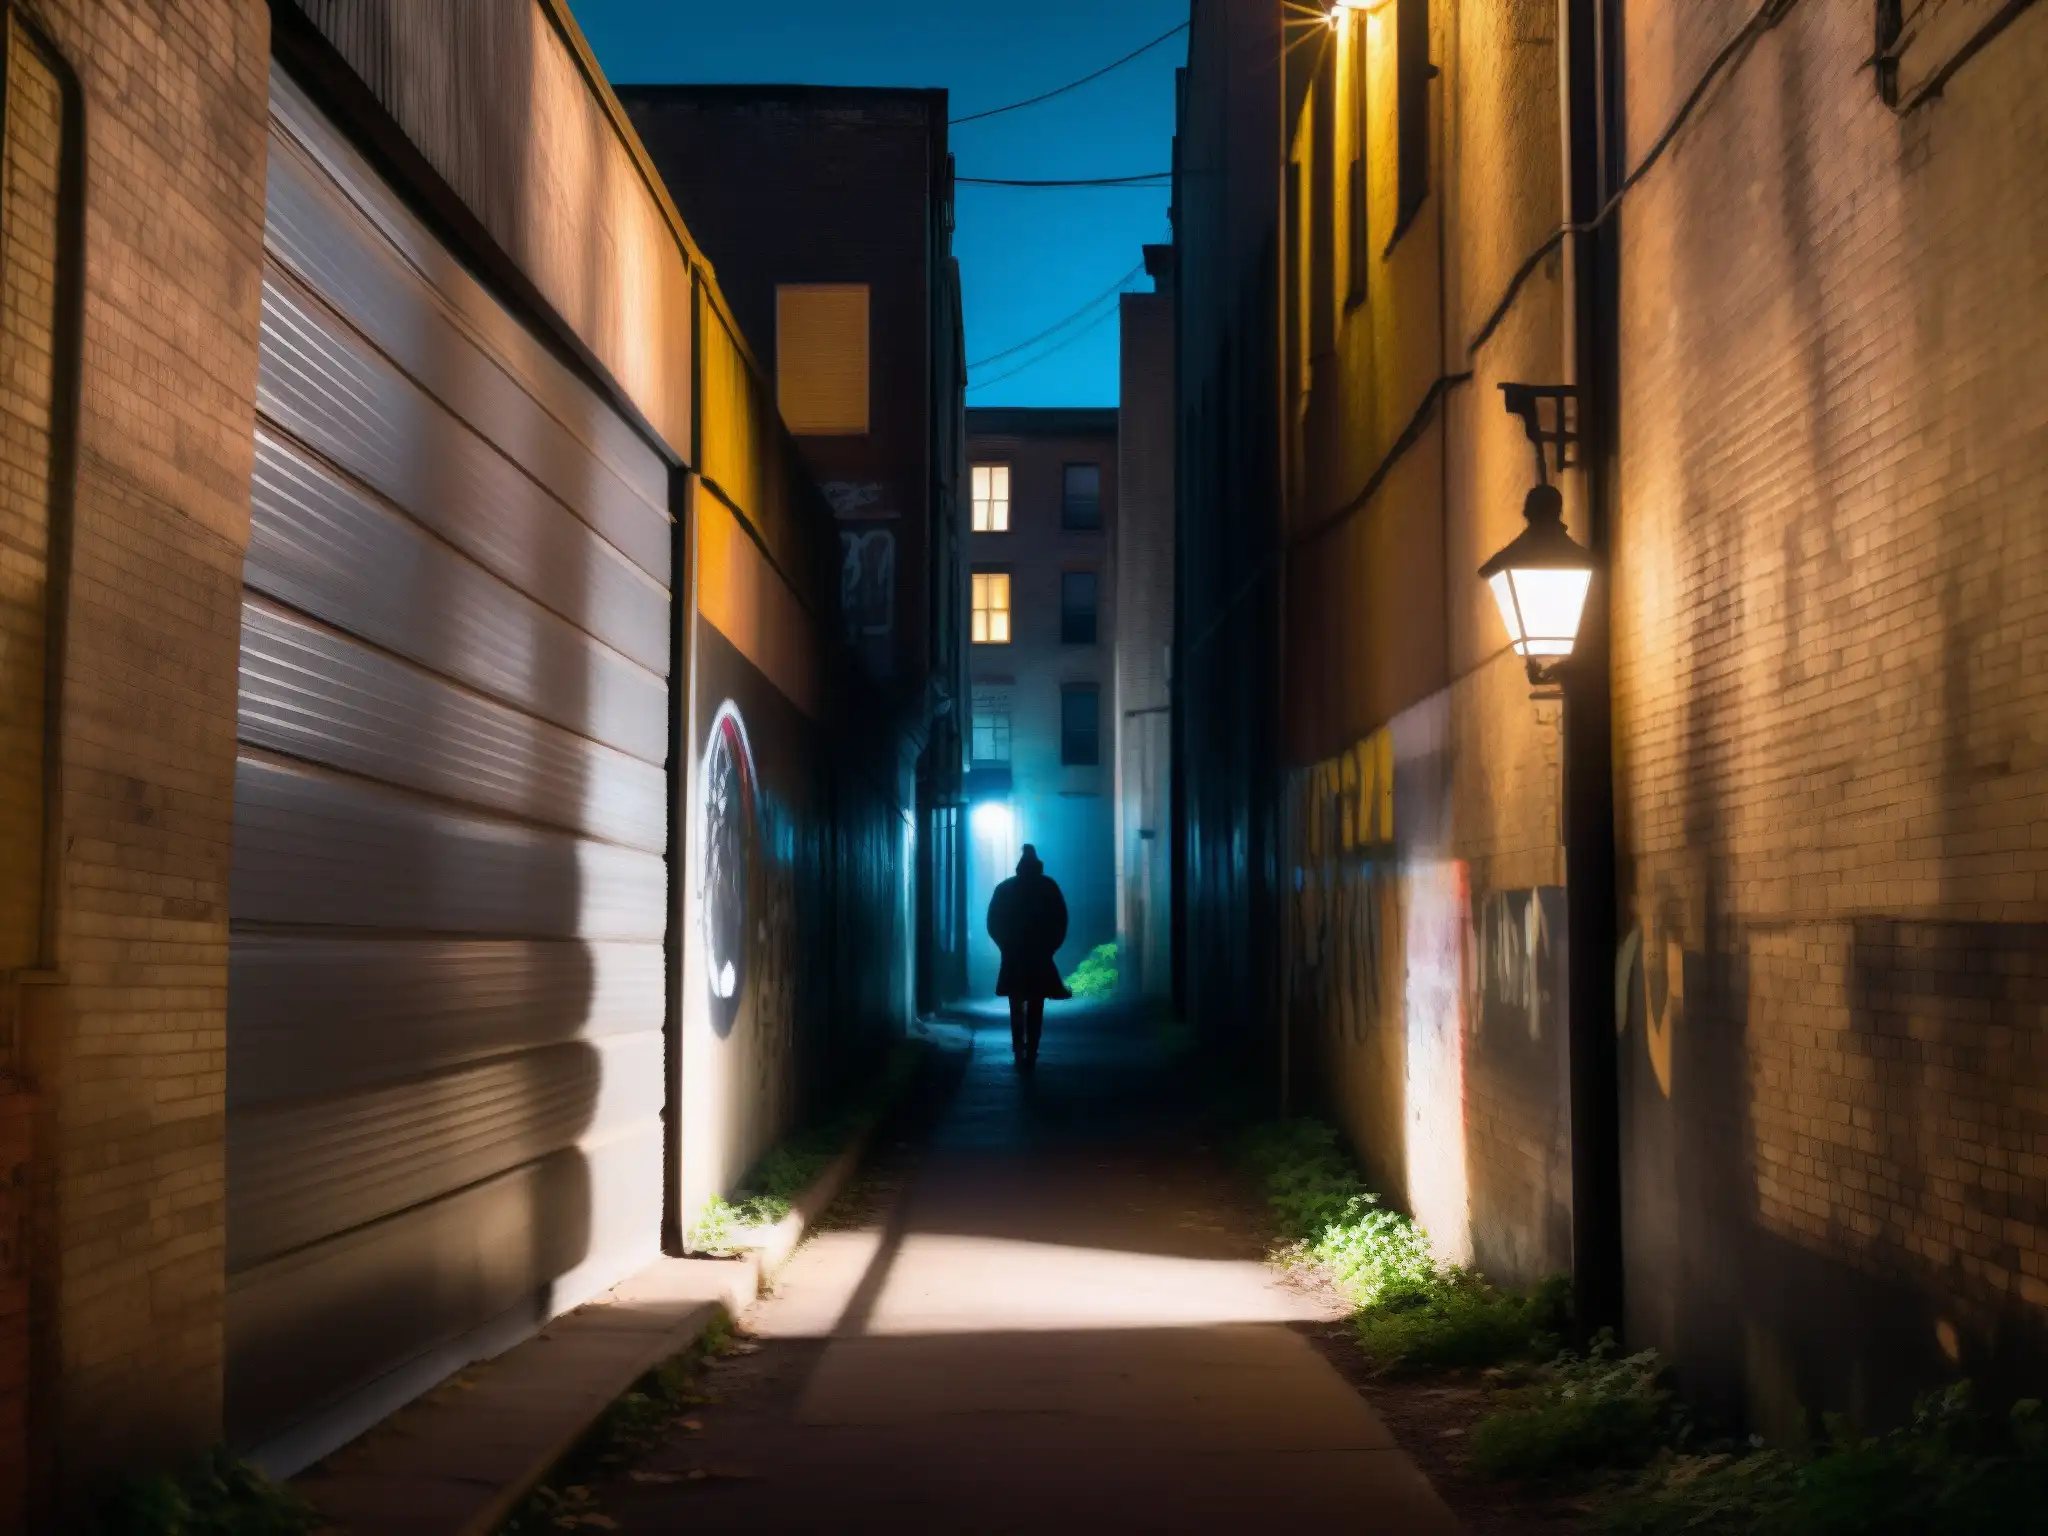 Un callejón oscuro de noche con una figura sombría y graffiti, evocando misterio y la palabra clave 'Desmitificación de leyendas urbanas'